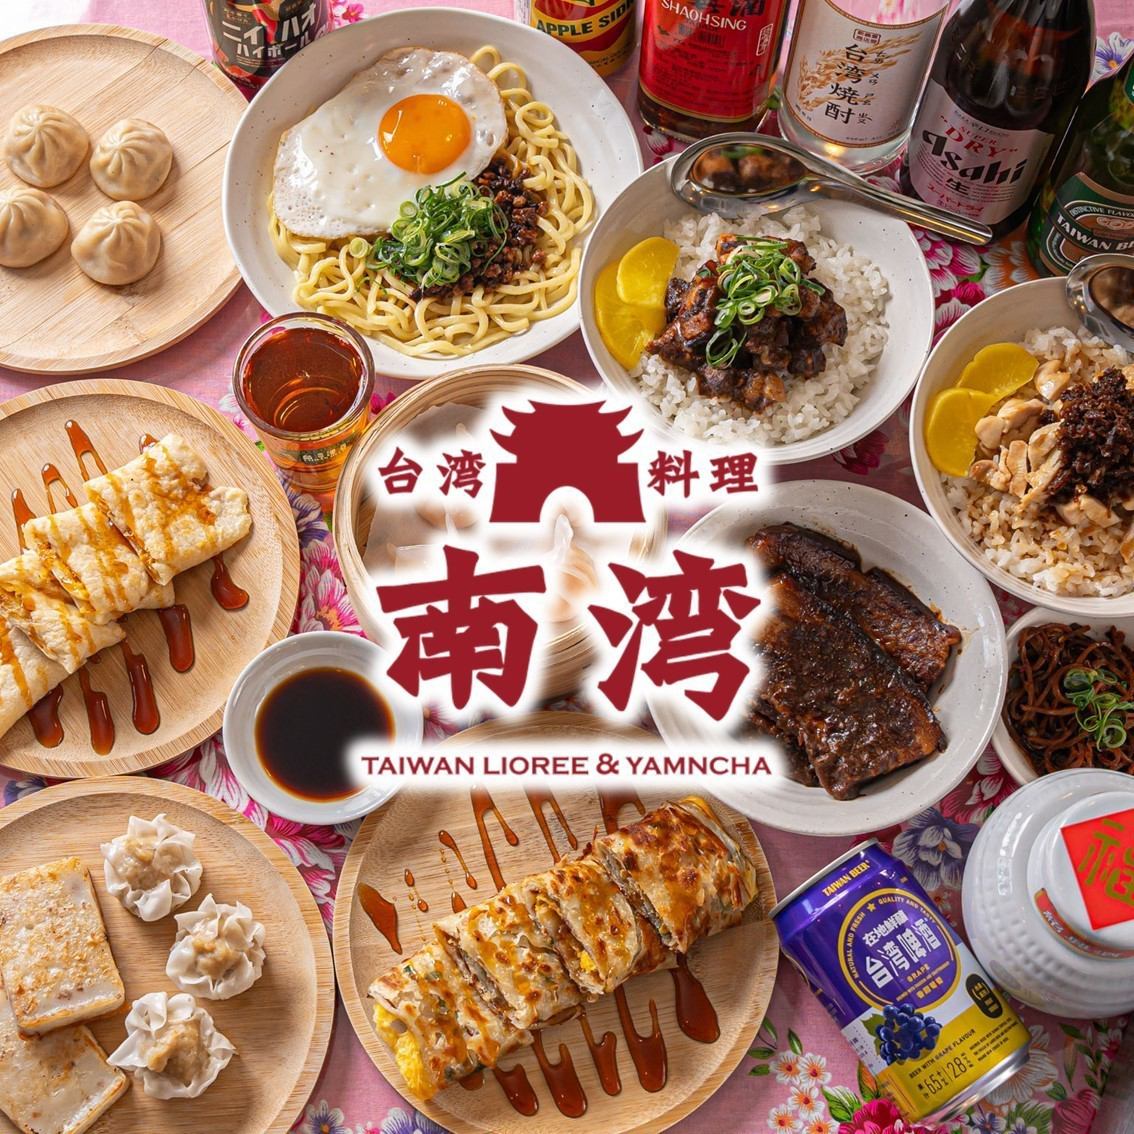 在享受旅行感覺的空間中享用正宗的街頭美食和台灣酒。